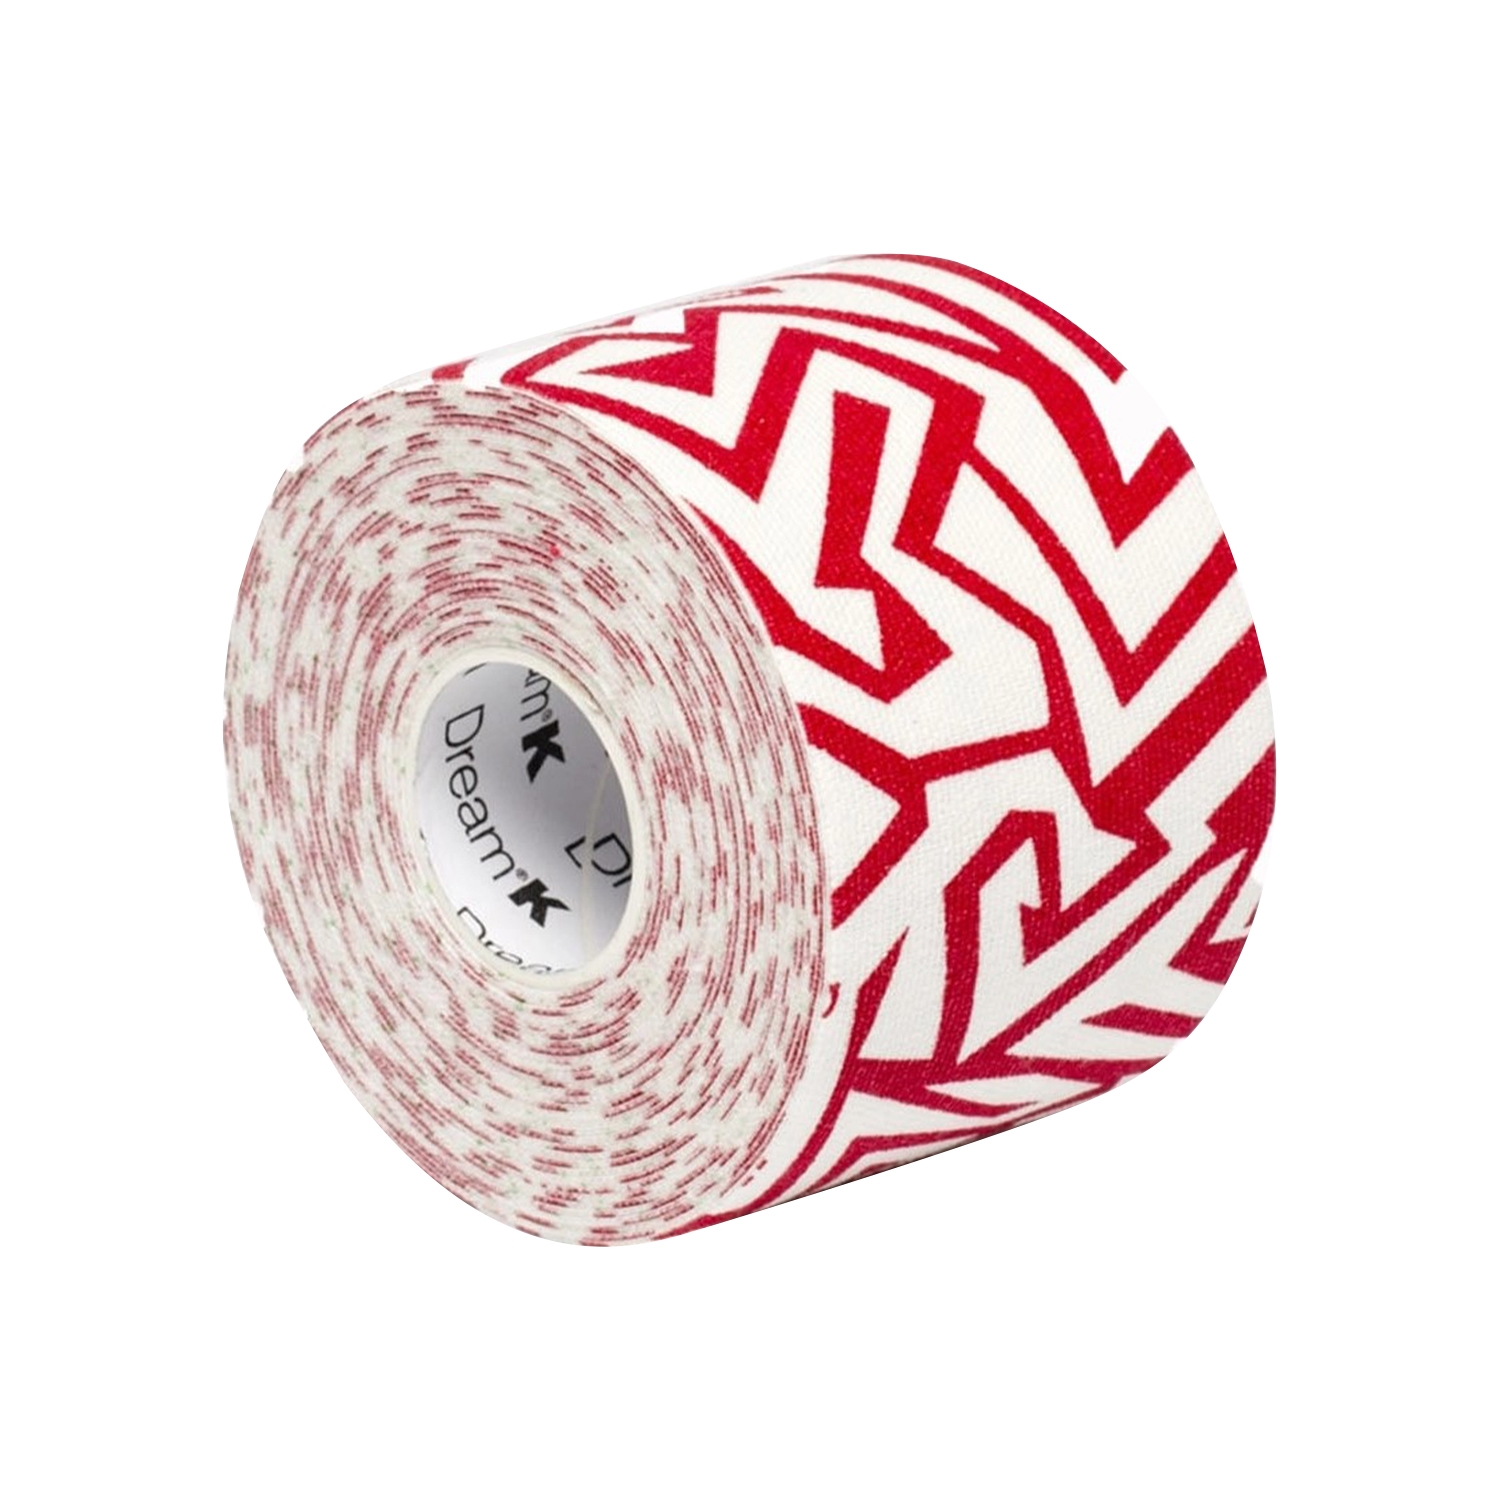 páska tejpovací SIXTUS DREAM-K TRIBE bílá-červená